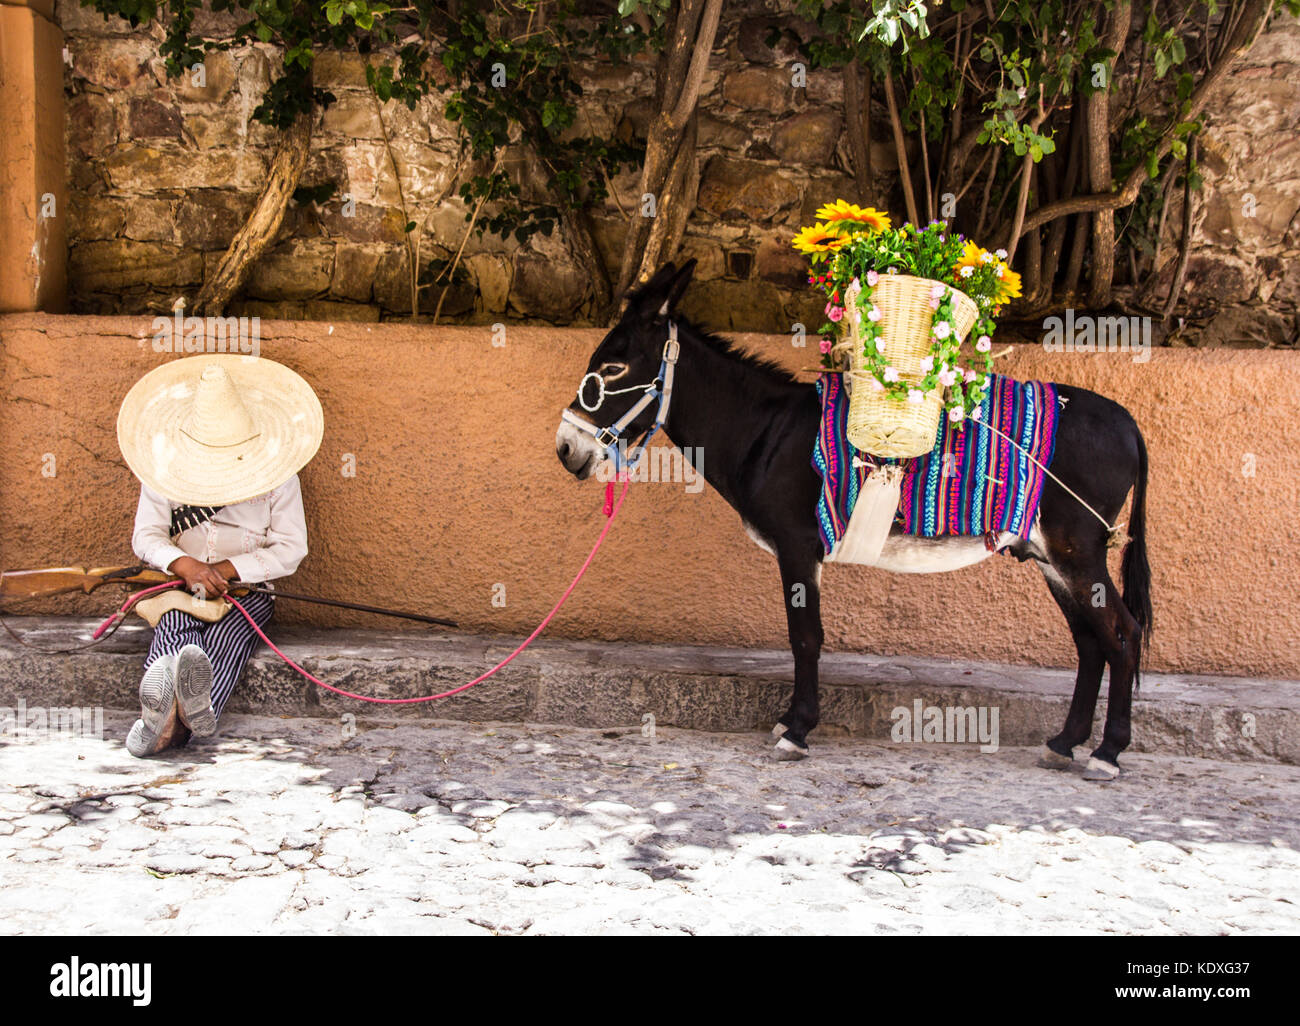 San Miguel de Allende, Guanajuato - Mexique - 0627 2017 : l'homme avec le costume traditionnel mexicain révolutionnaire et de l'âne Banque D'Images